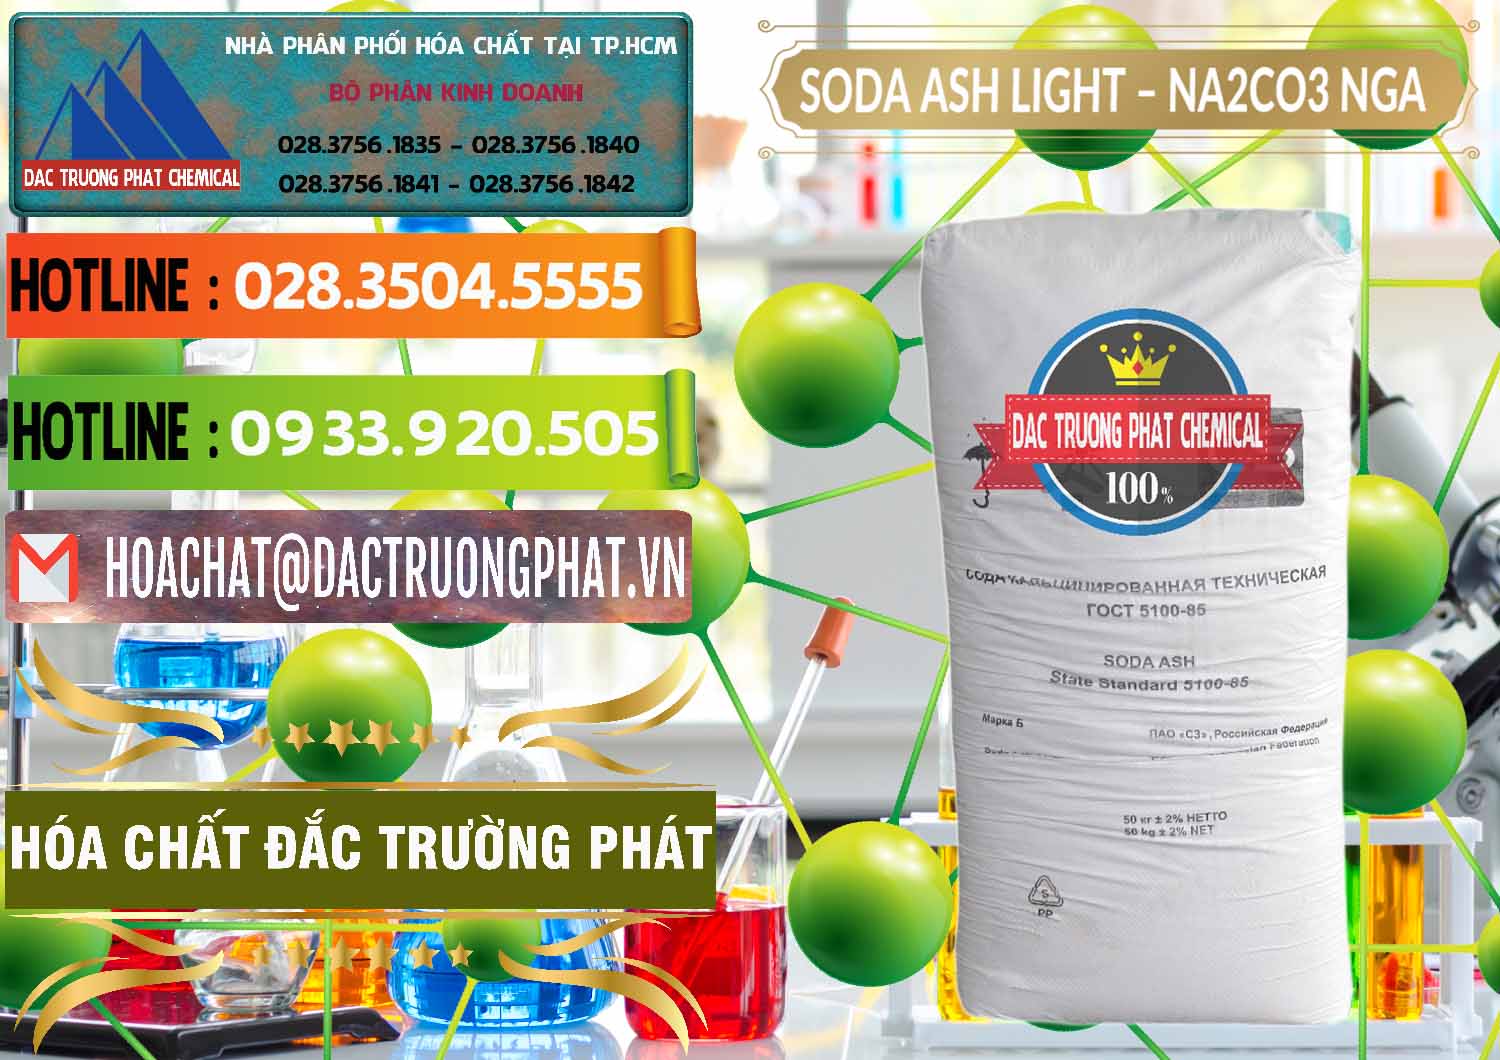 Chuyên bán ( cung cấp ) Soda Ash Light - NA2CO3 Nga Russia - 0128 - Công ty chuyên cung cấp và bán hóa chất tại TP.HCM - cungcaphoachat.com.vn